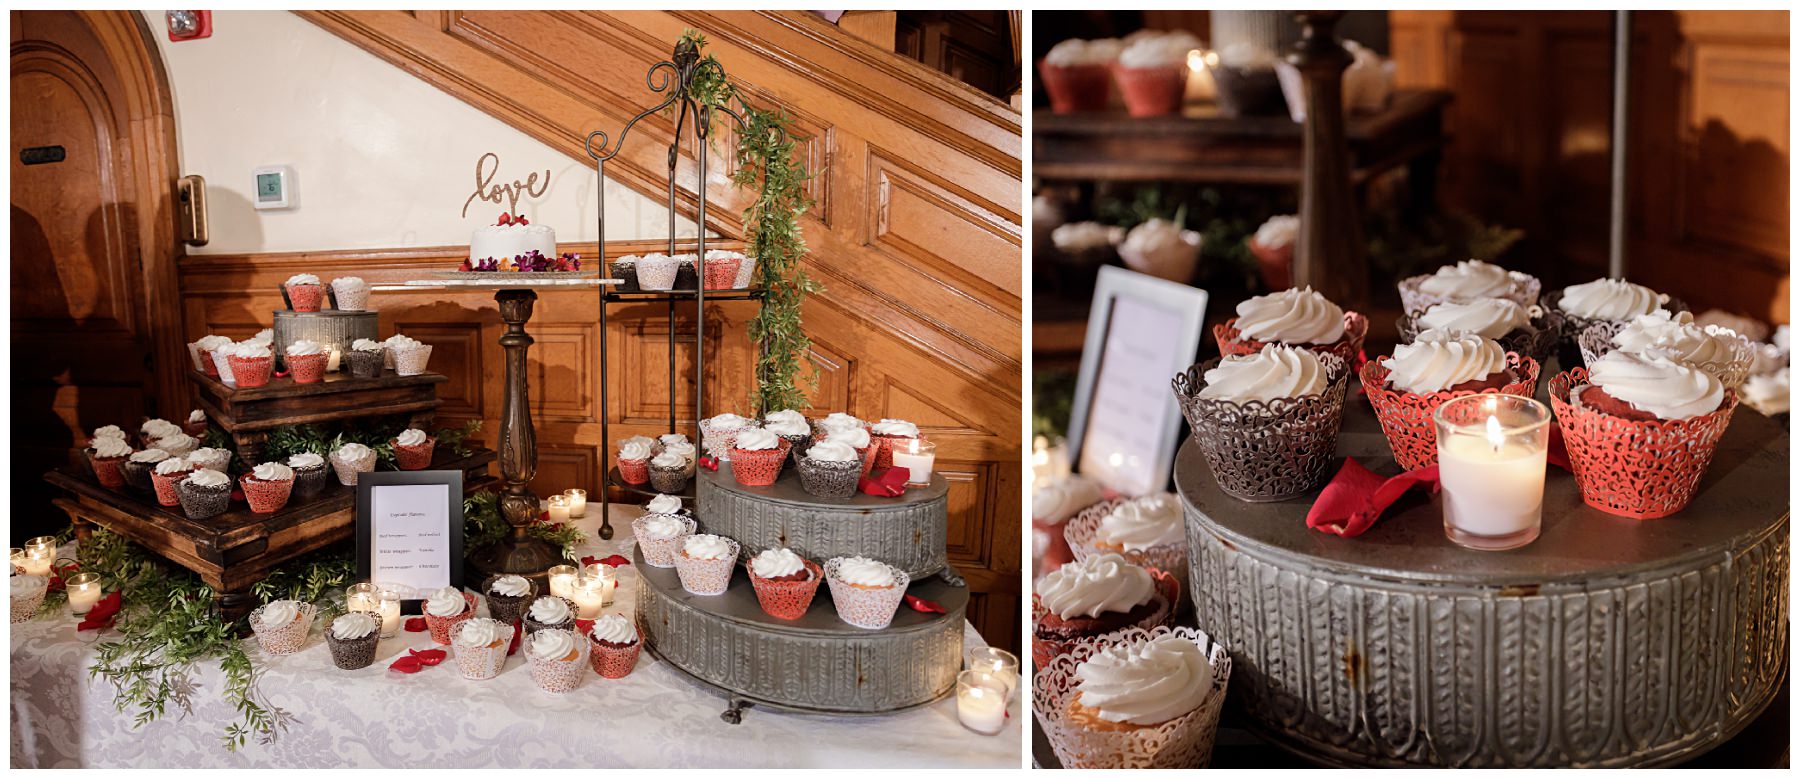 cupcake wedding display for cake cutting